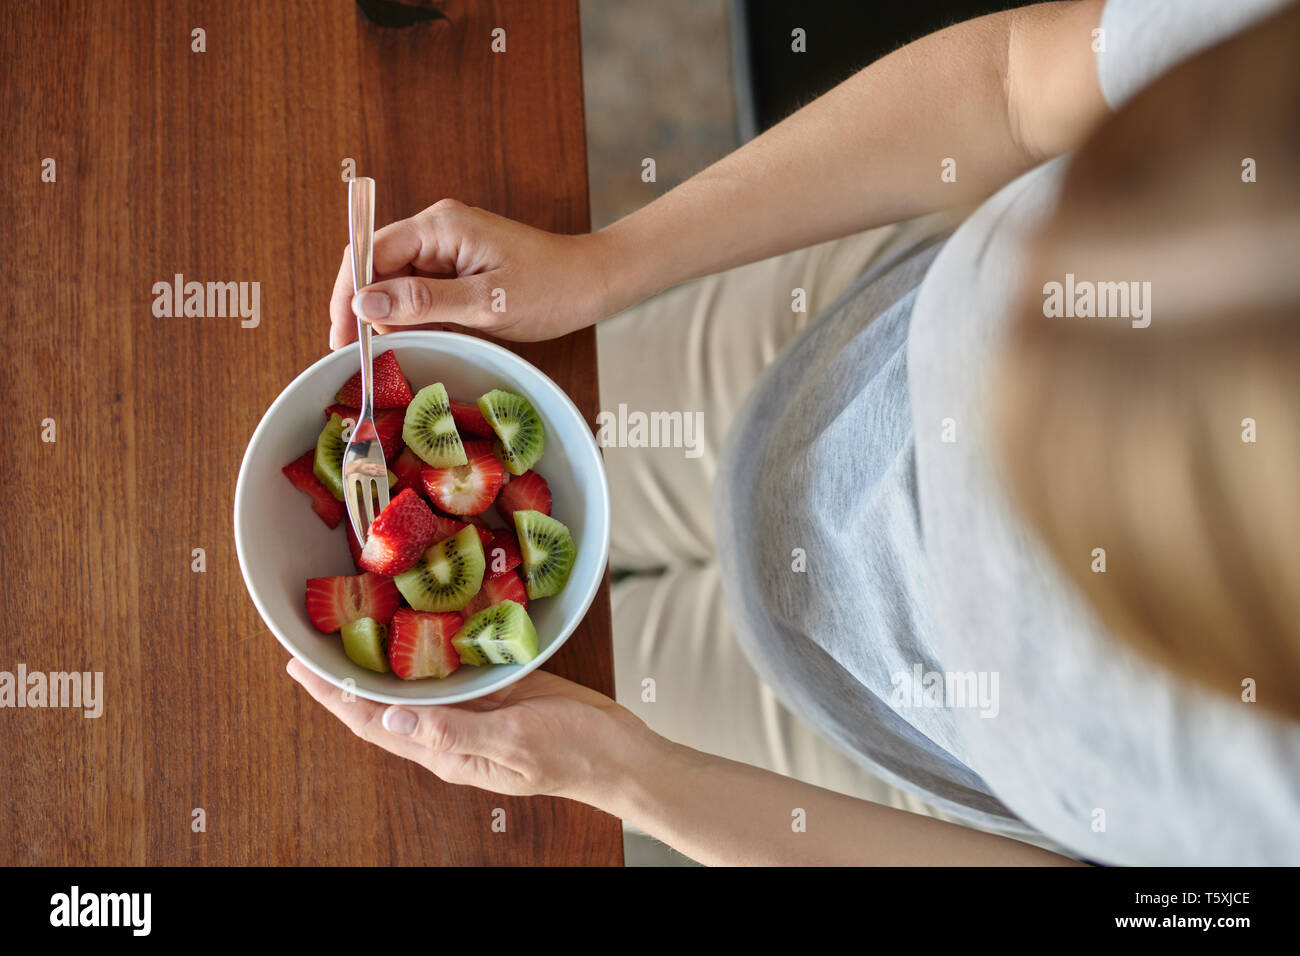 Donna incinta mangiare una tazza di macedonia di frutta con fragole fresche seduti a un tavolo da pranzo in un vicino sul cibo e la sua pancia in una dieta sana Foto Stock